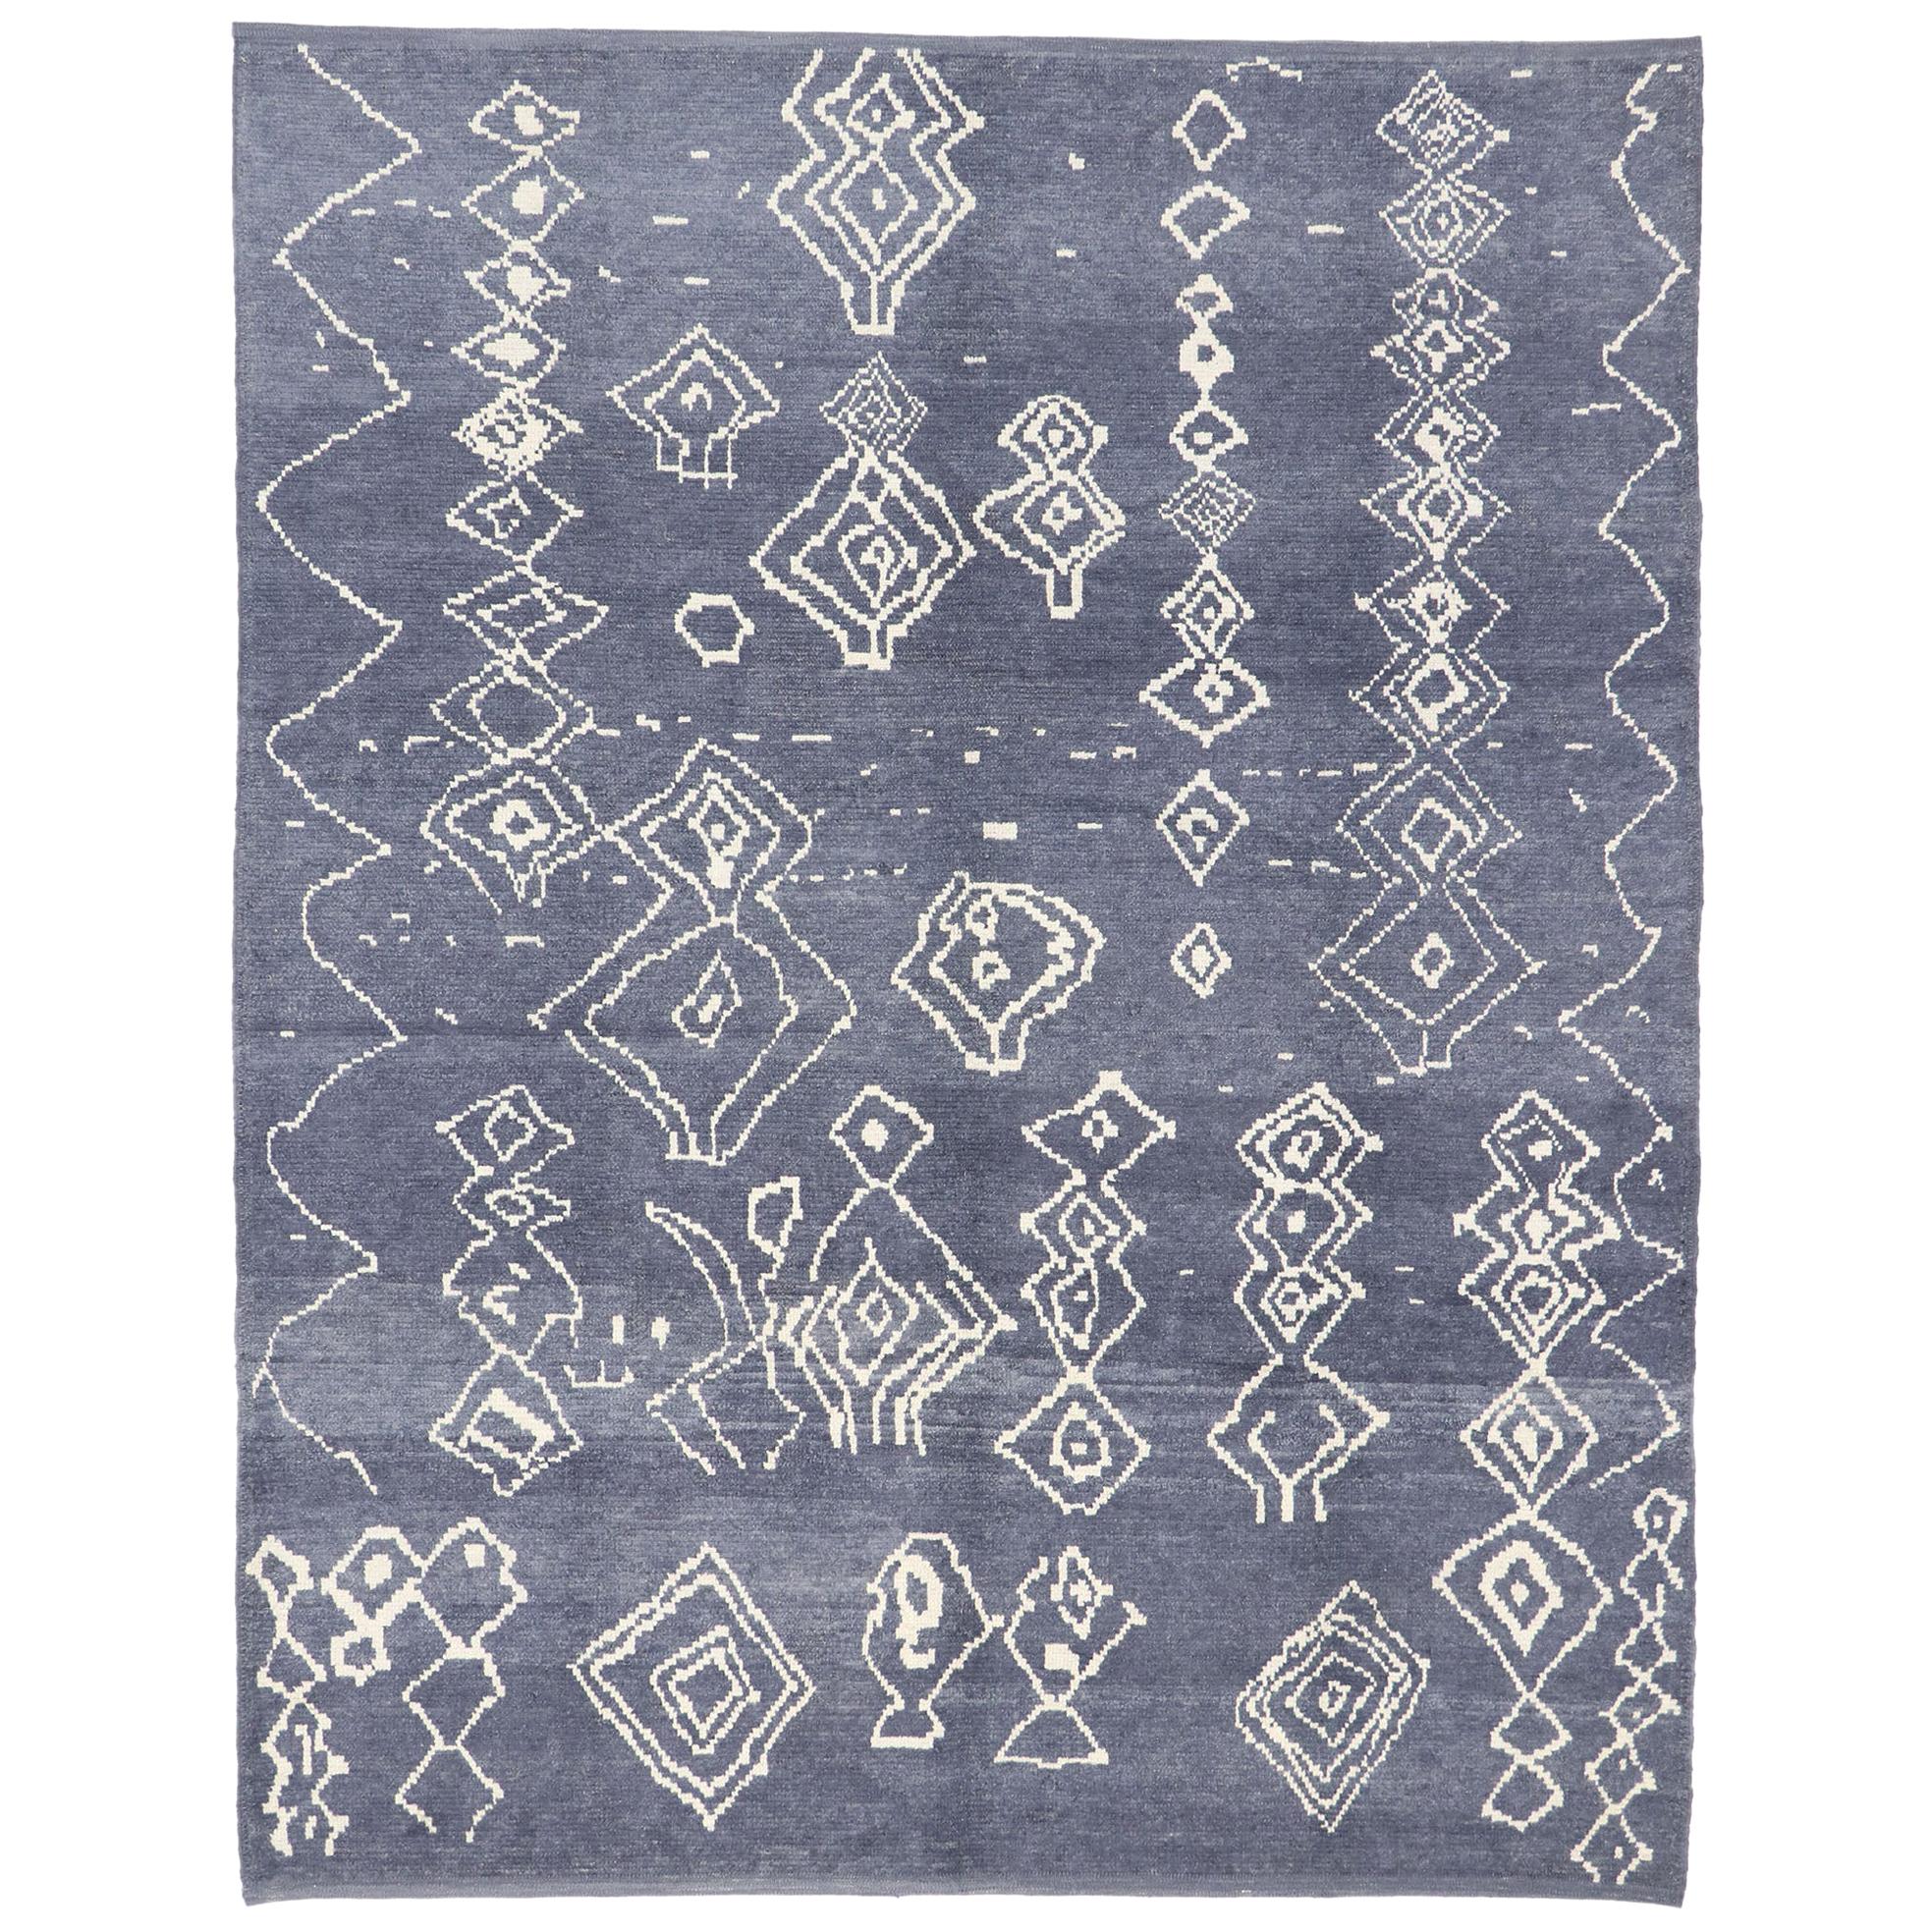 Nouveau tapis marocain contemporain de style avec motif tribal